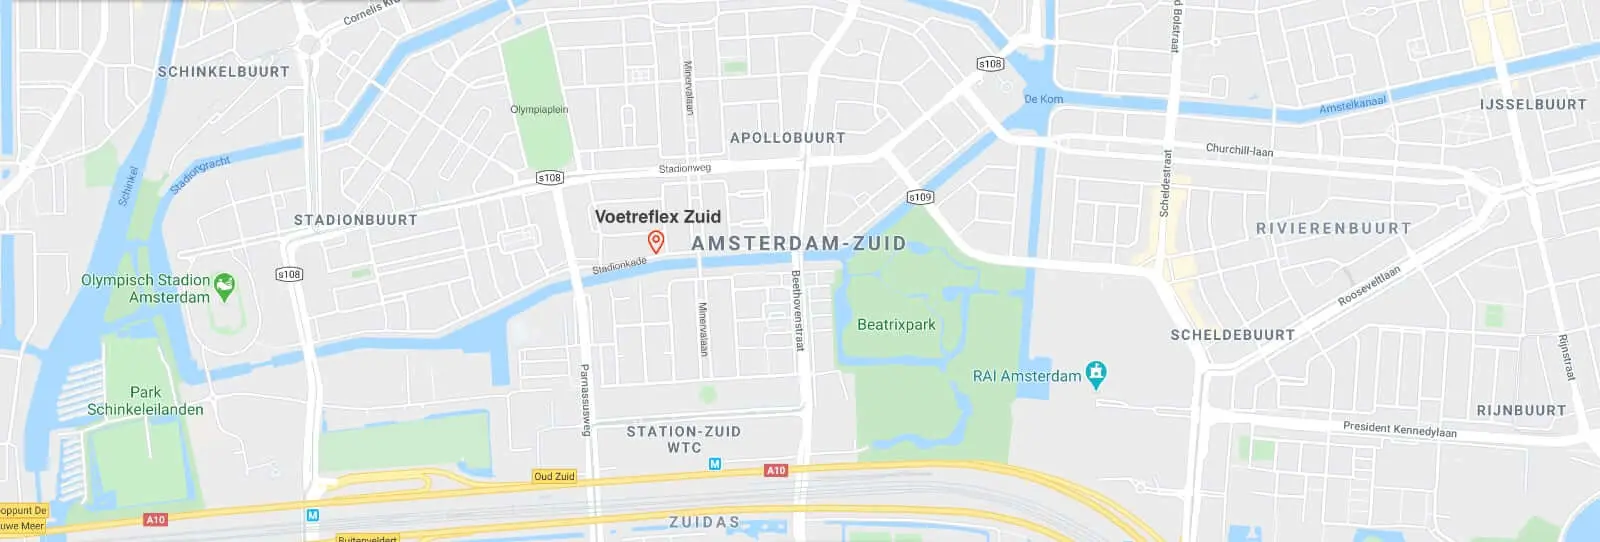 Locatie Voetreflex Zuid. Voor heerlijk, helende voetreflexologie in Amsterdam en Amstelveen